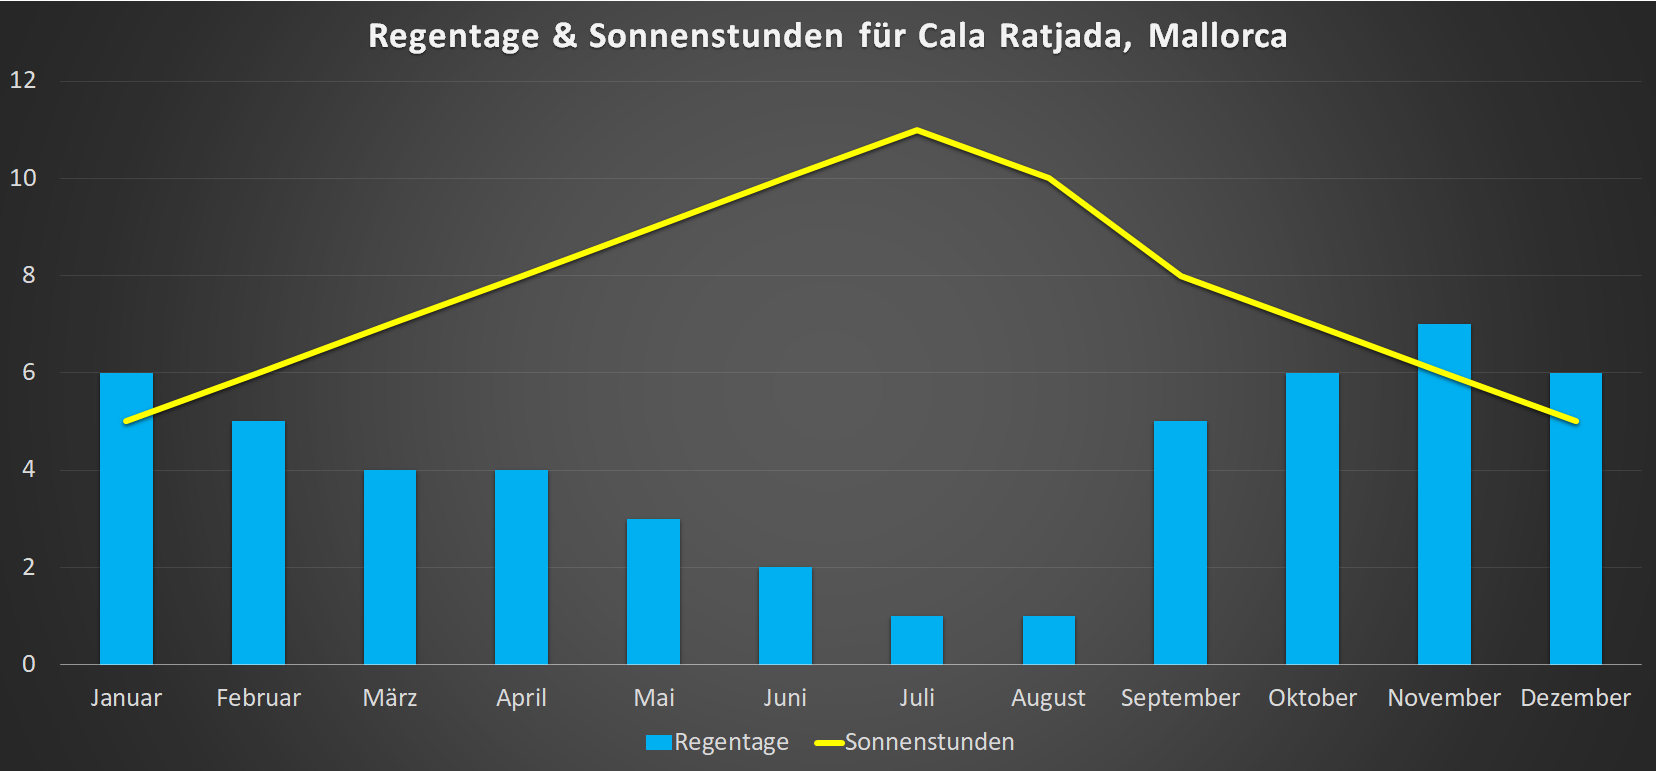 Regentage & Sonnenstunden für Cala Ratjada im Jahresverlauf